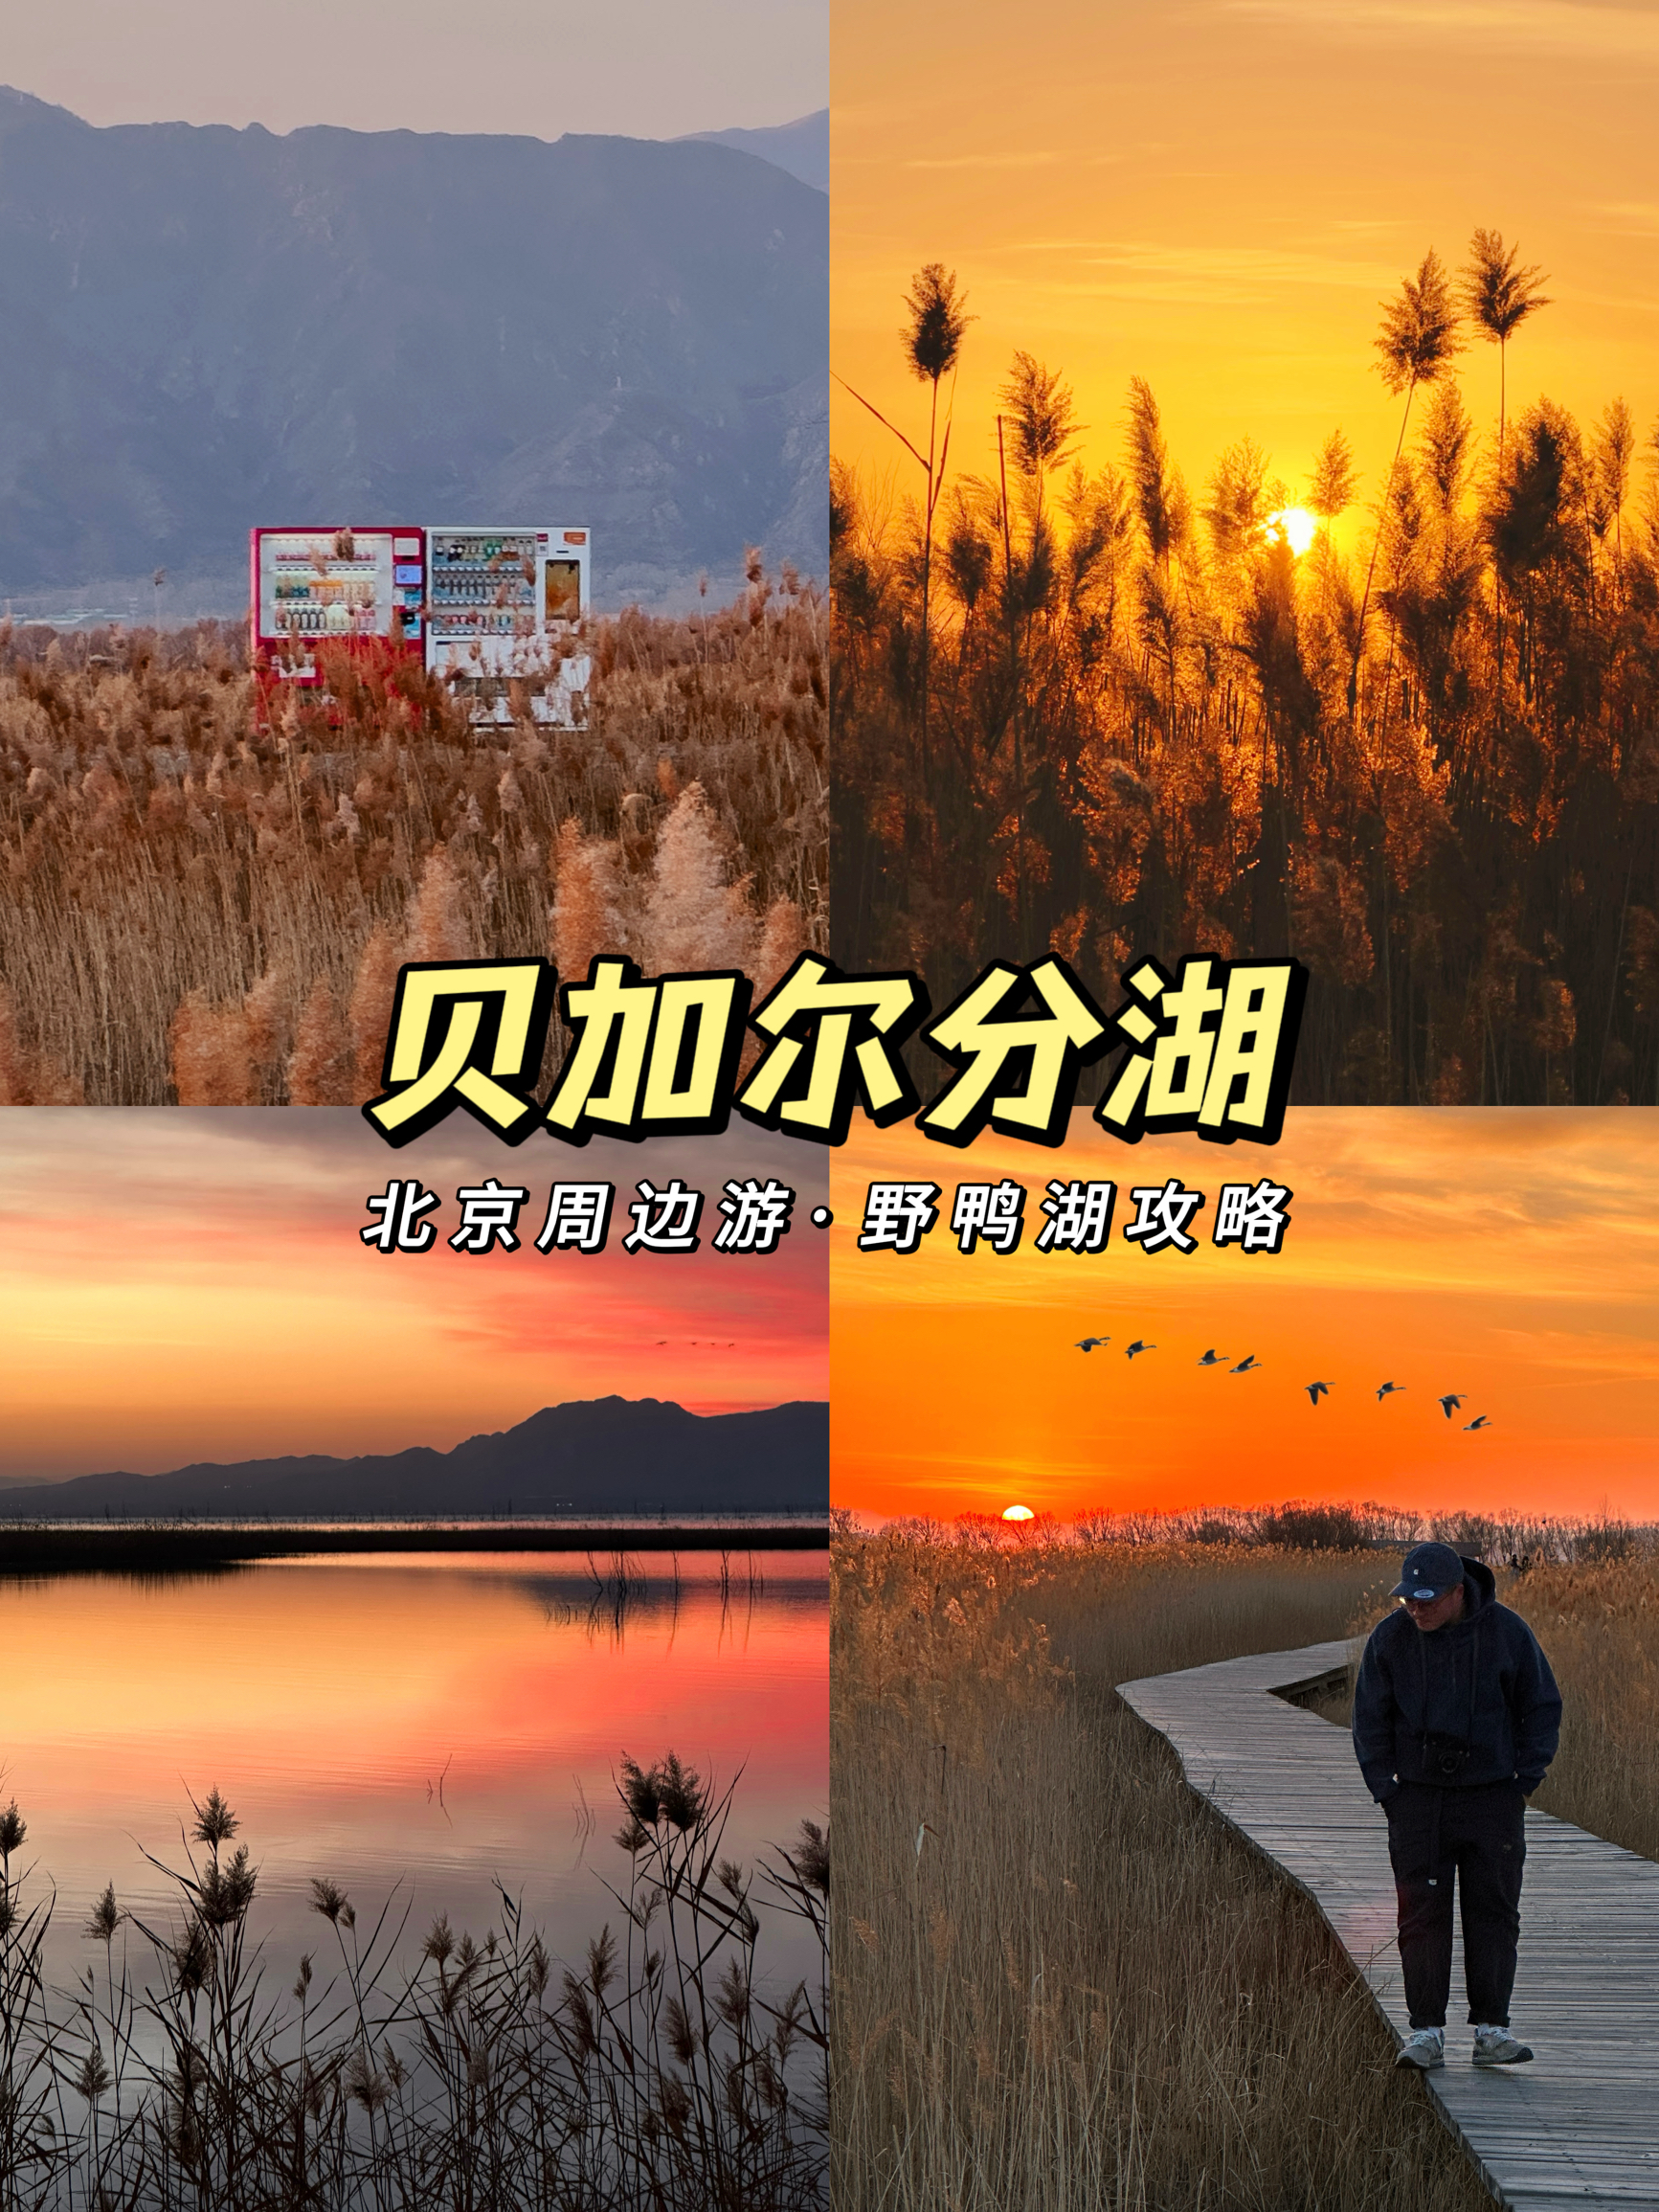 京郊性价比📍野鸭湖🍂芦苇荡给足冬日氛围